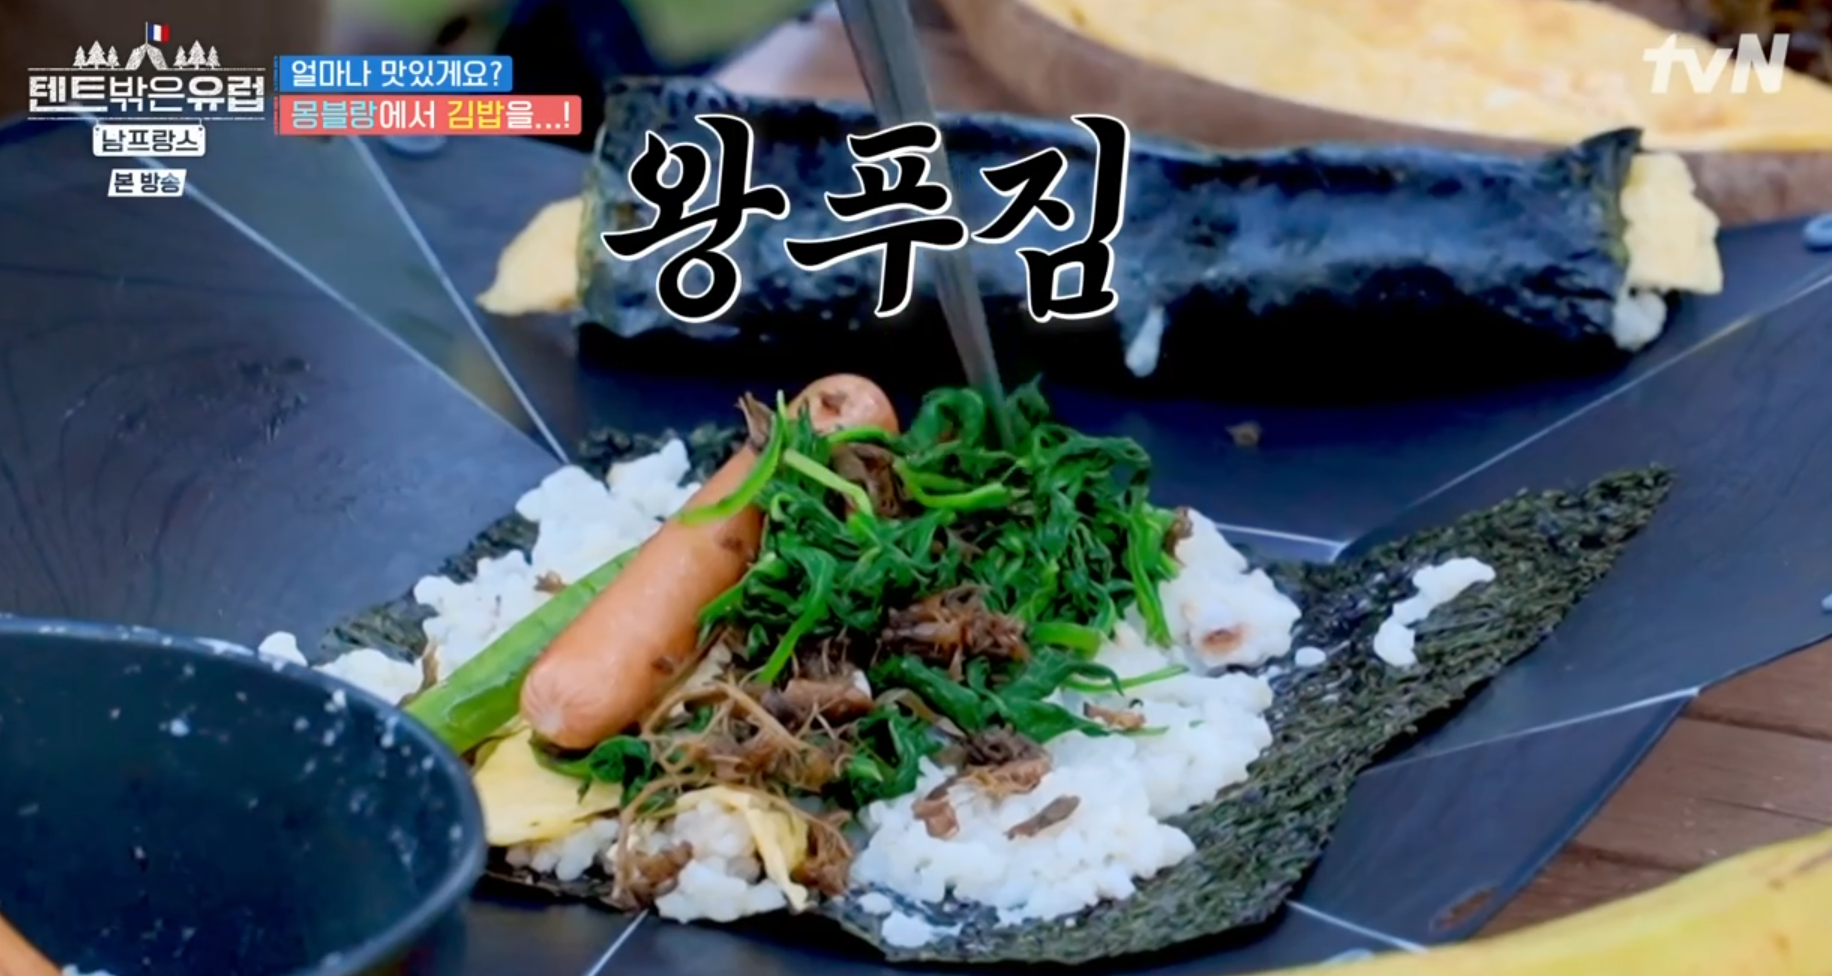 텐트밖은유럽/남프랑스 5화&#44; 몽블랑 쉼터에서 먹을 김밥